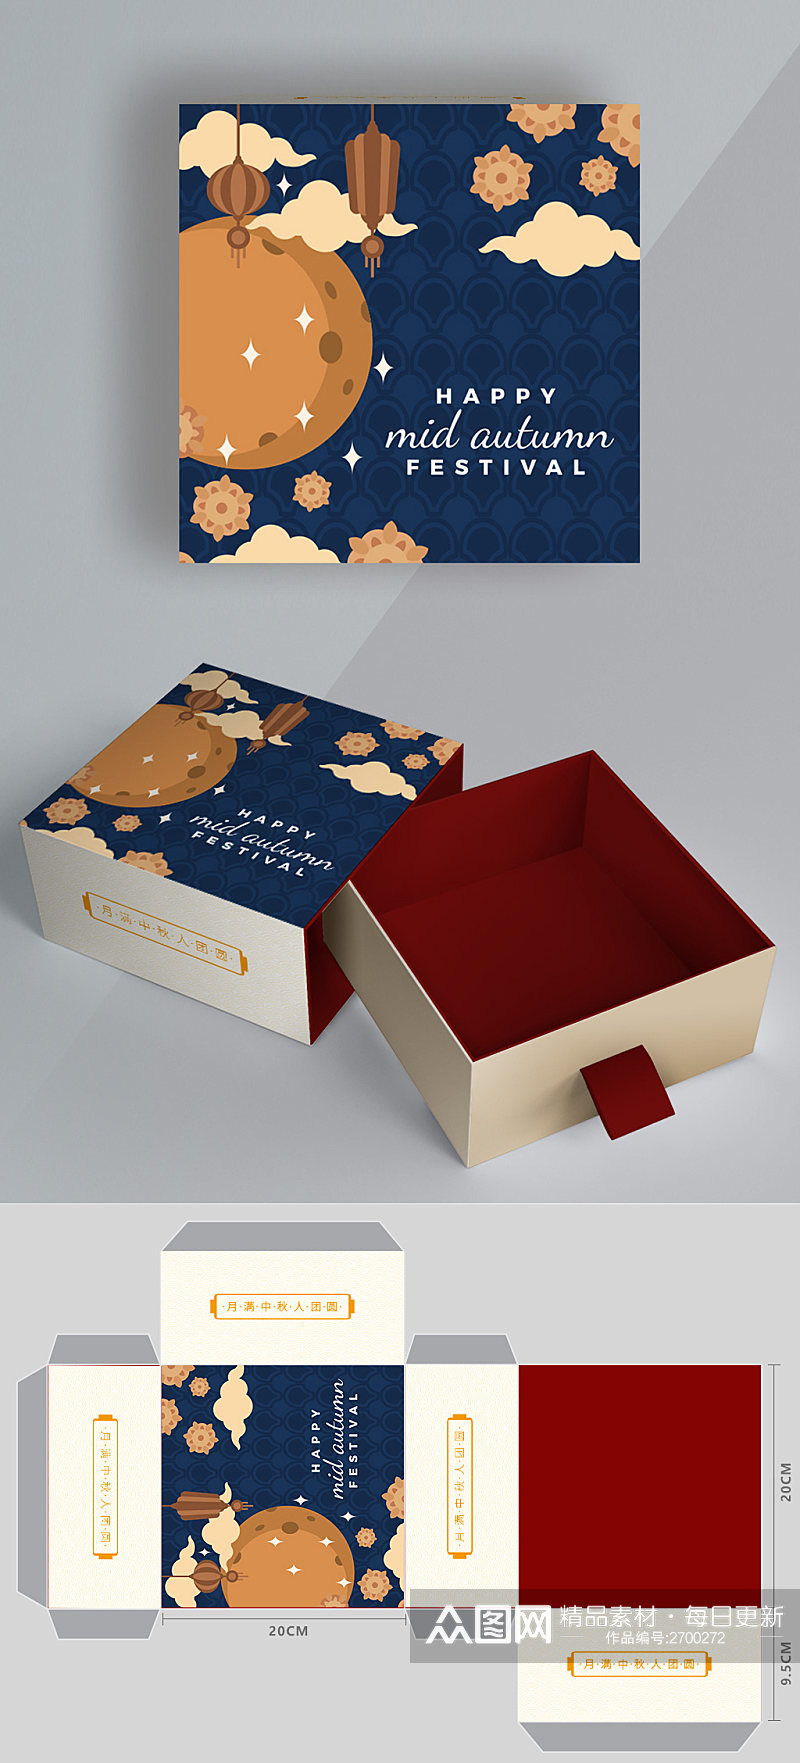 八月十五中秋节矢量手绘月饼礼盒包装设计素材